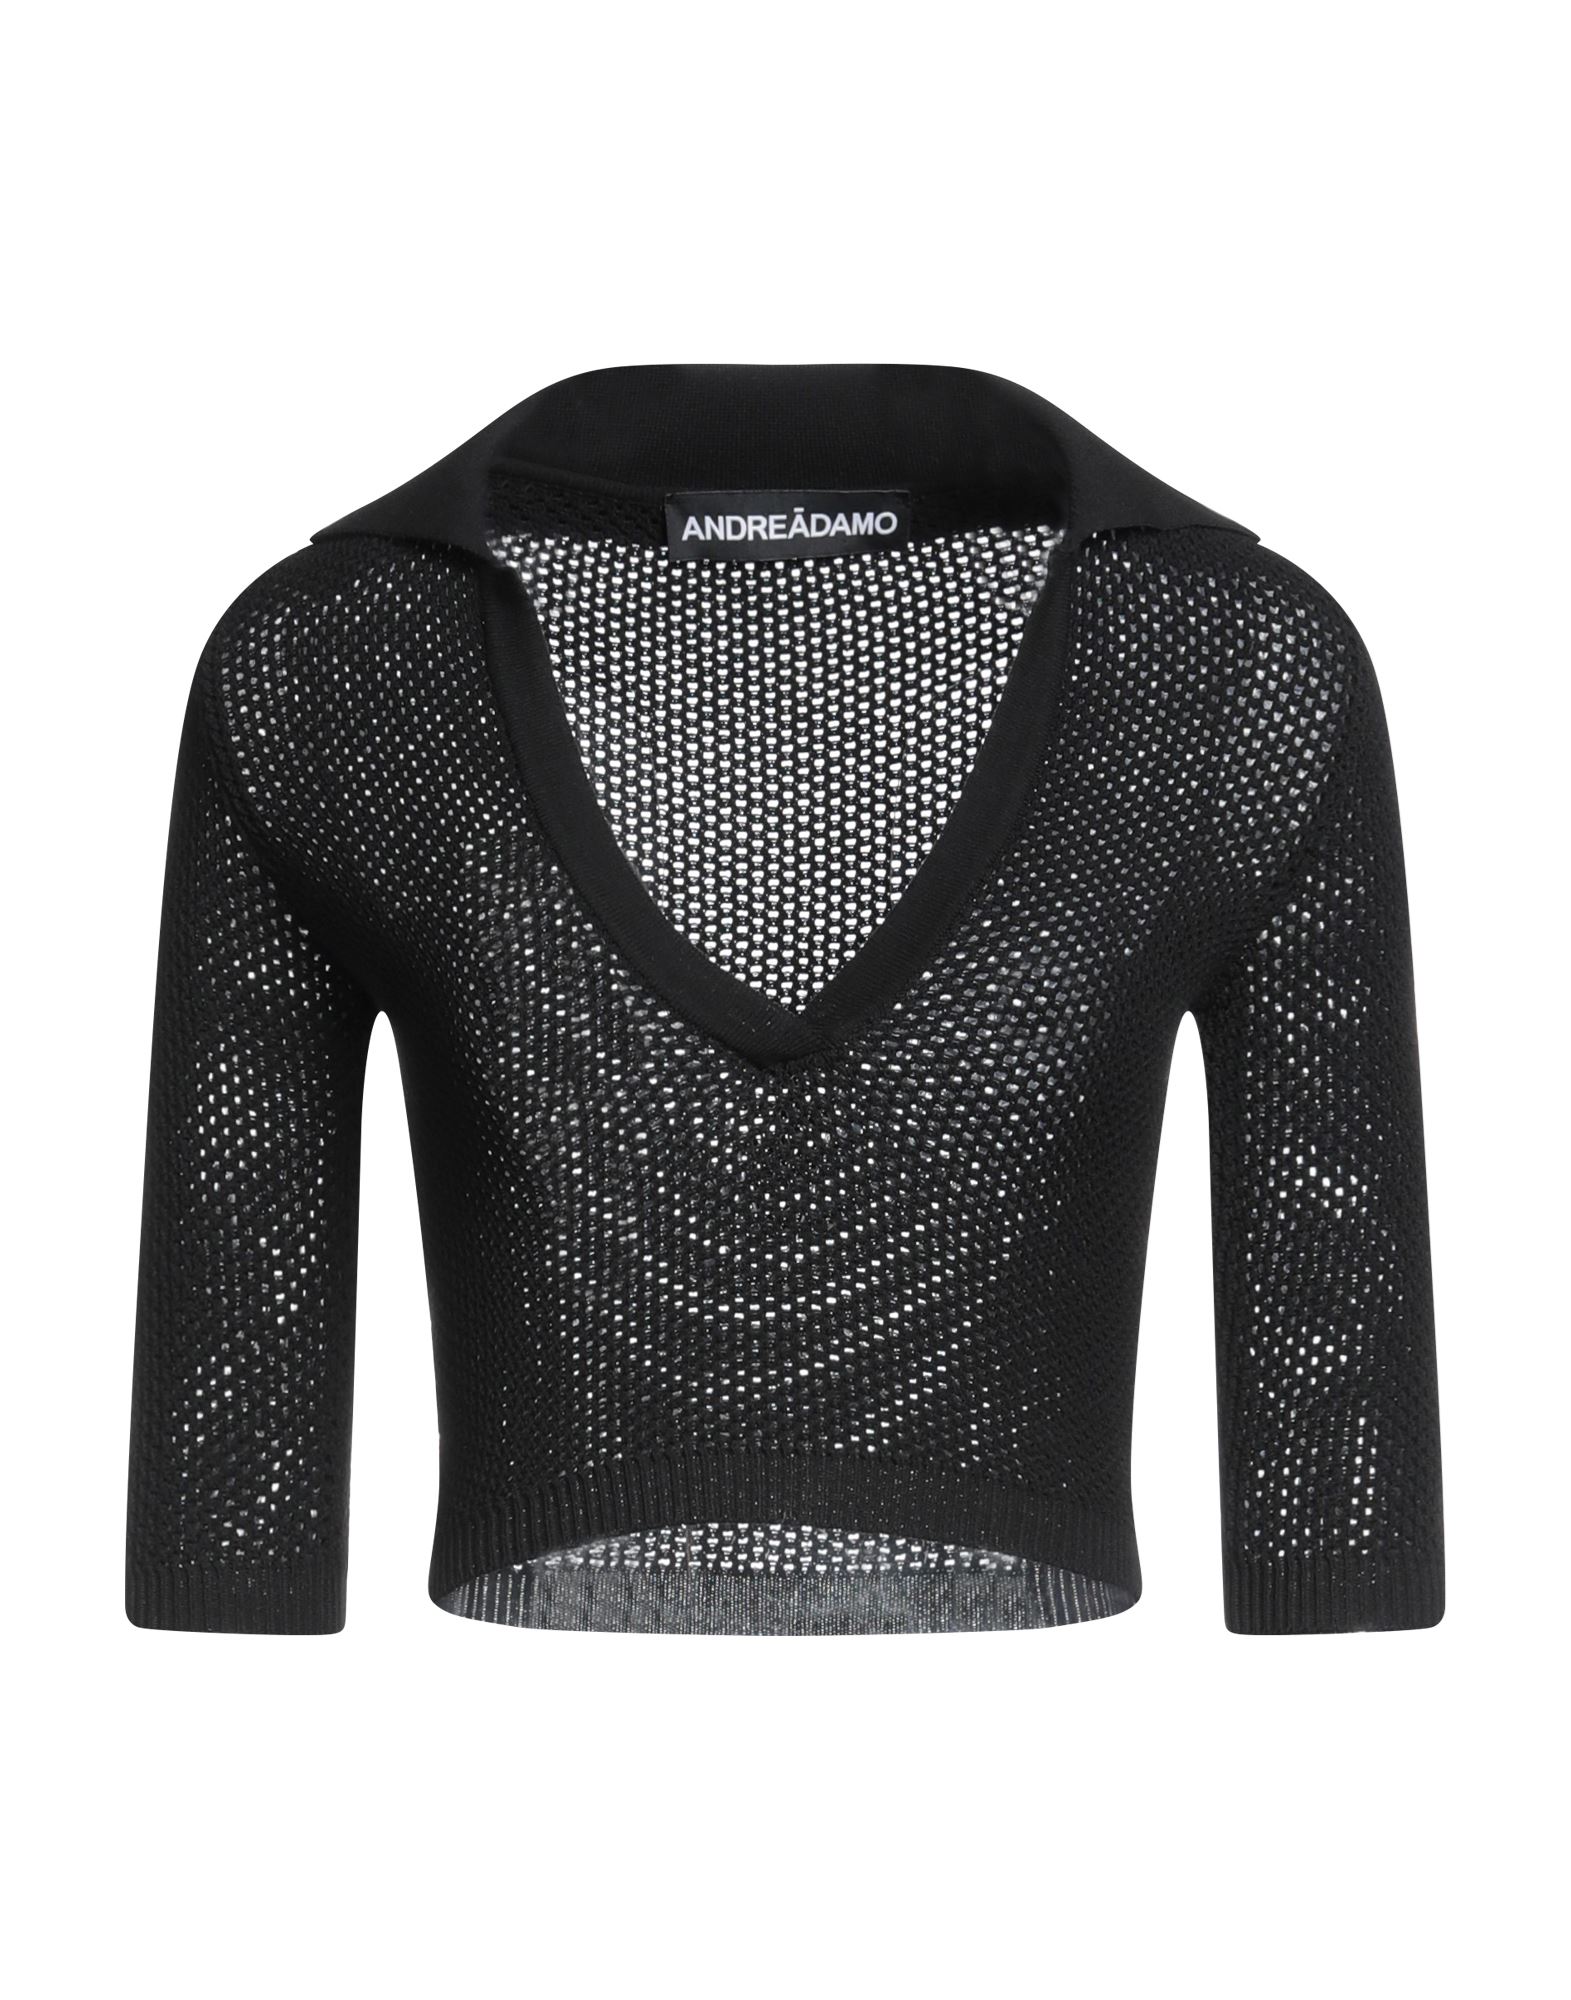 Adamo Andrea Adamo Sweaters In Black